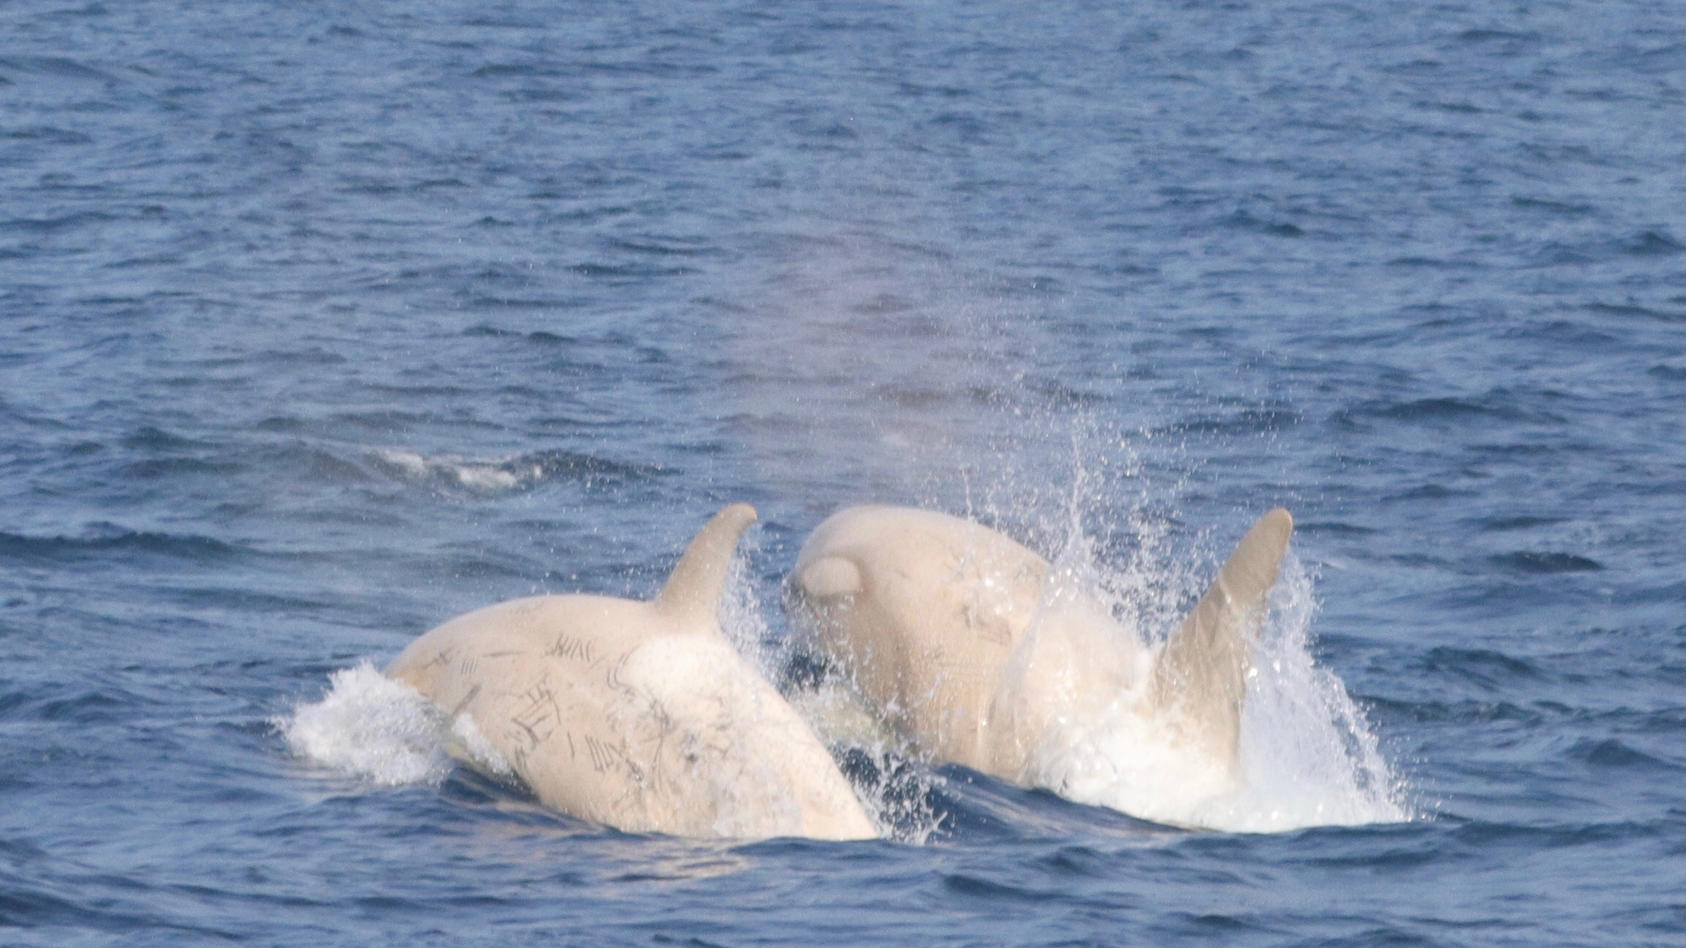 Das Bild zeigt zwei Killerwale, darunter ein unglaublich seltener weißer Orcas. Die Orcas wurden am Samstag, den 24. Juli vor der Küste Japan gesichtet.